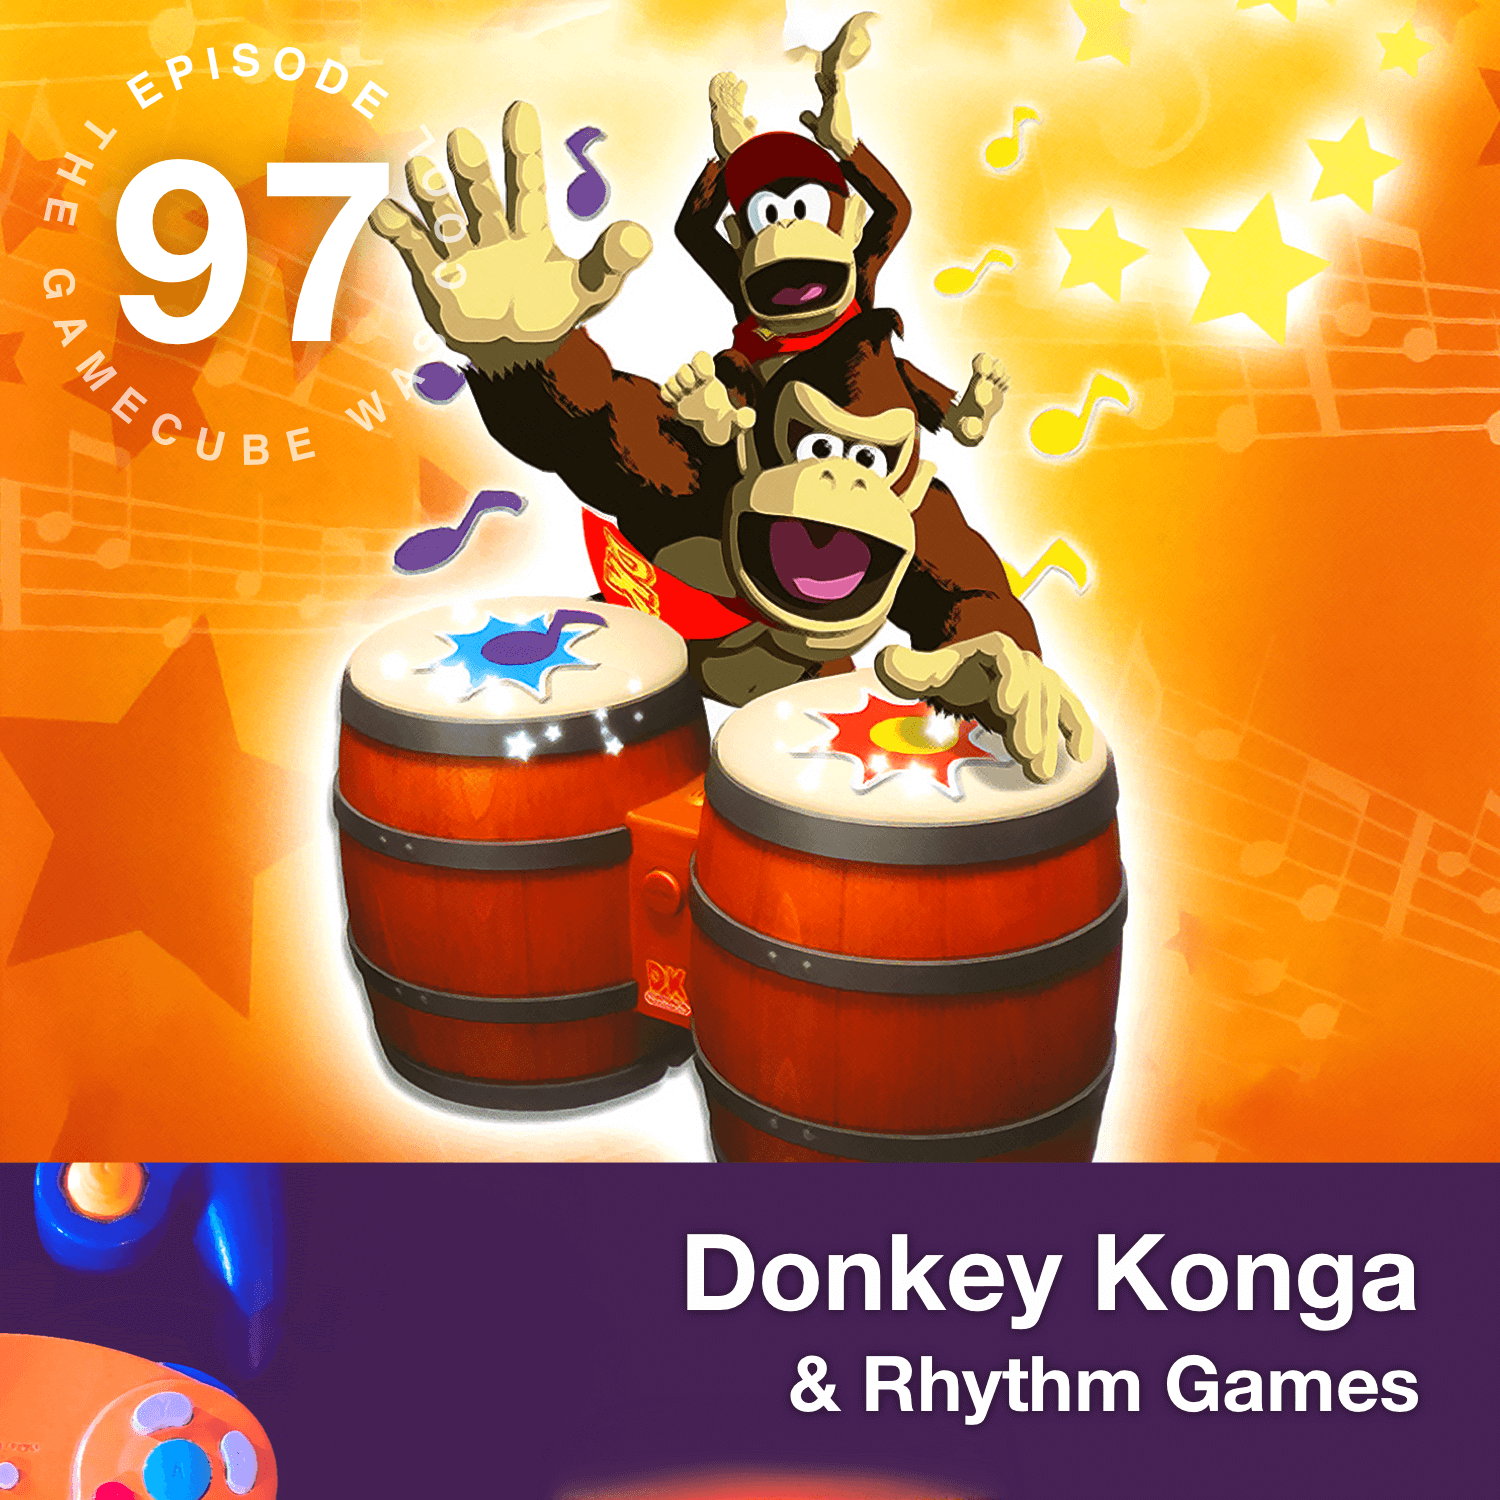 Donkey Konga & DDR Mario Mix